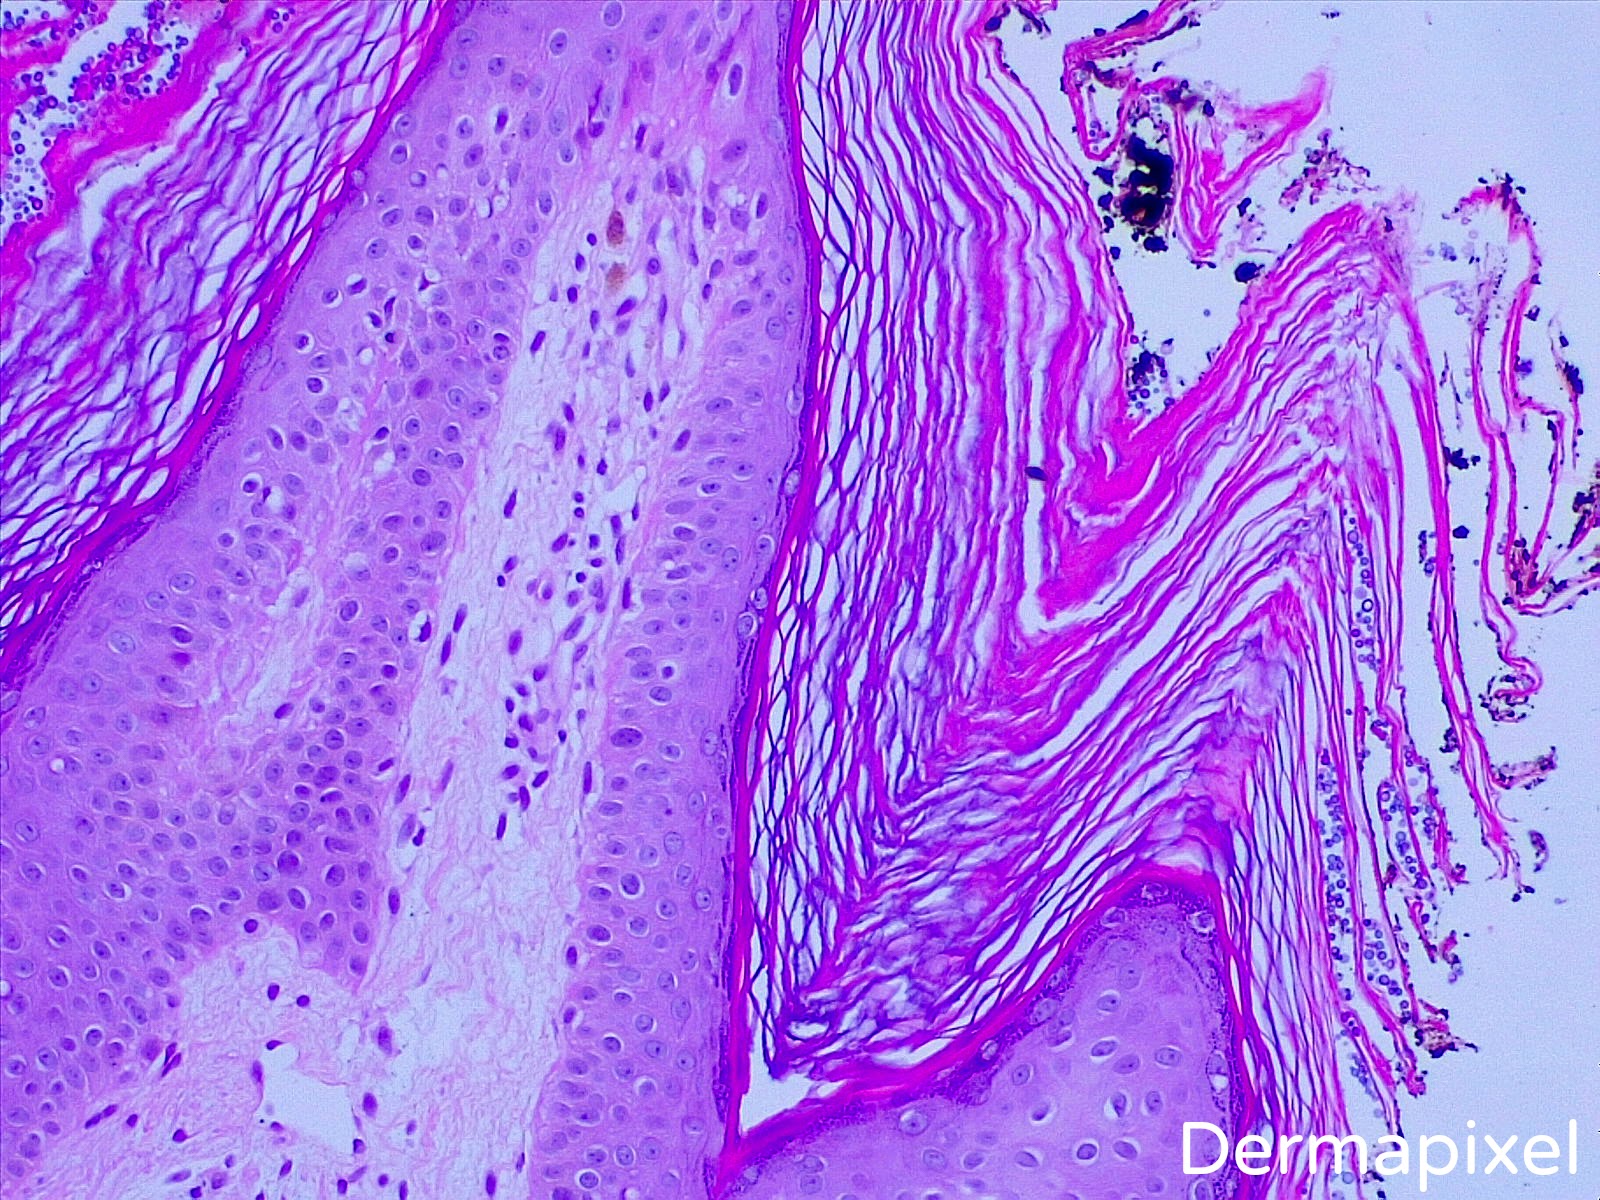 Papillomatosis dermatology. ChSkin (1) - Papillomatosis in skin tags